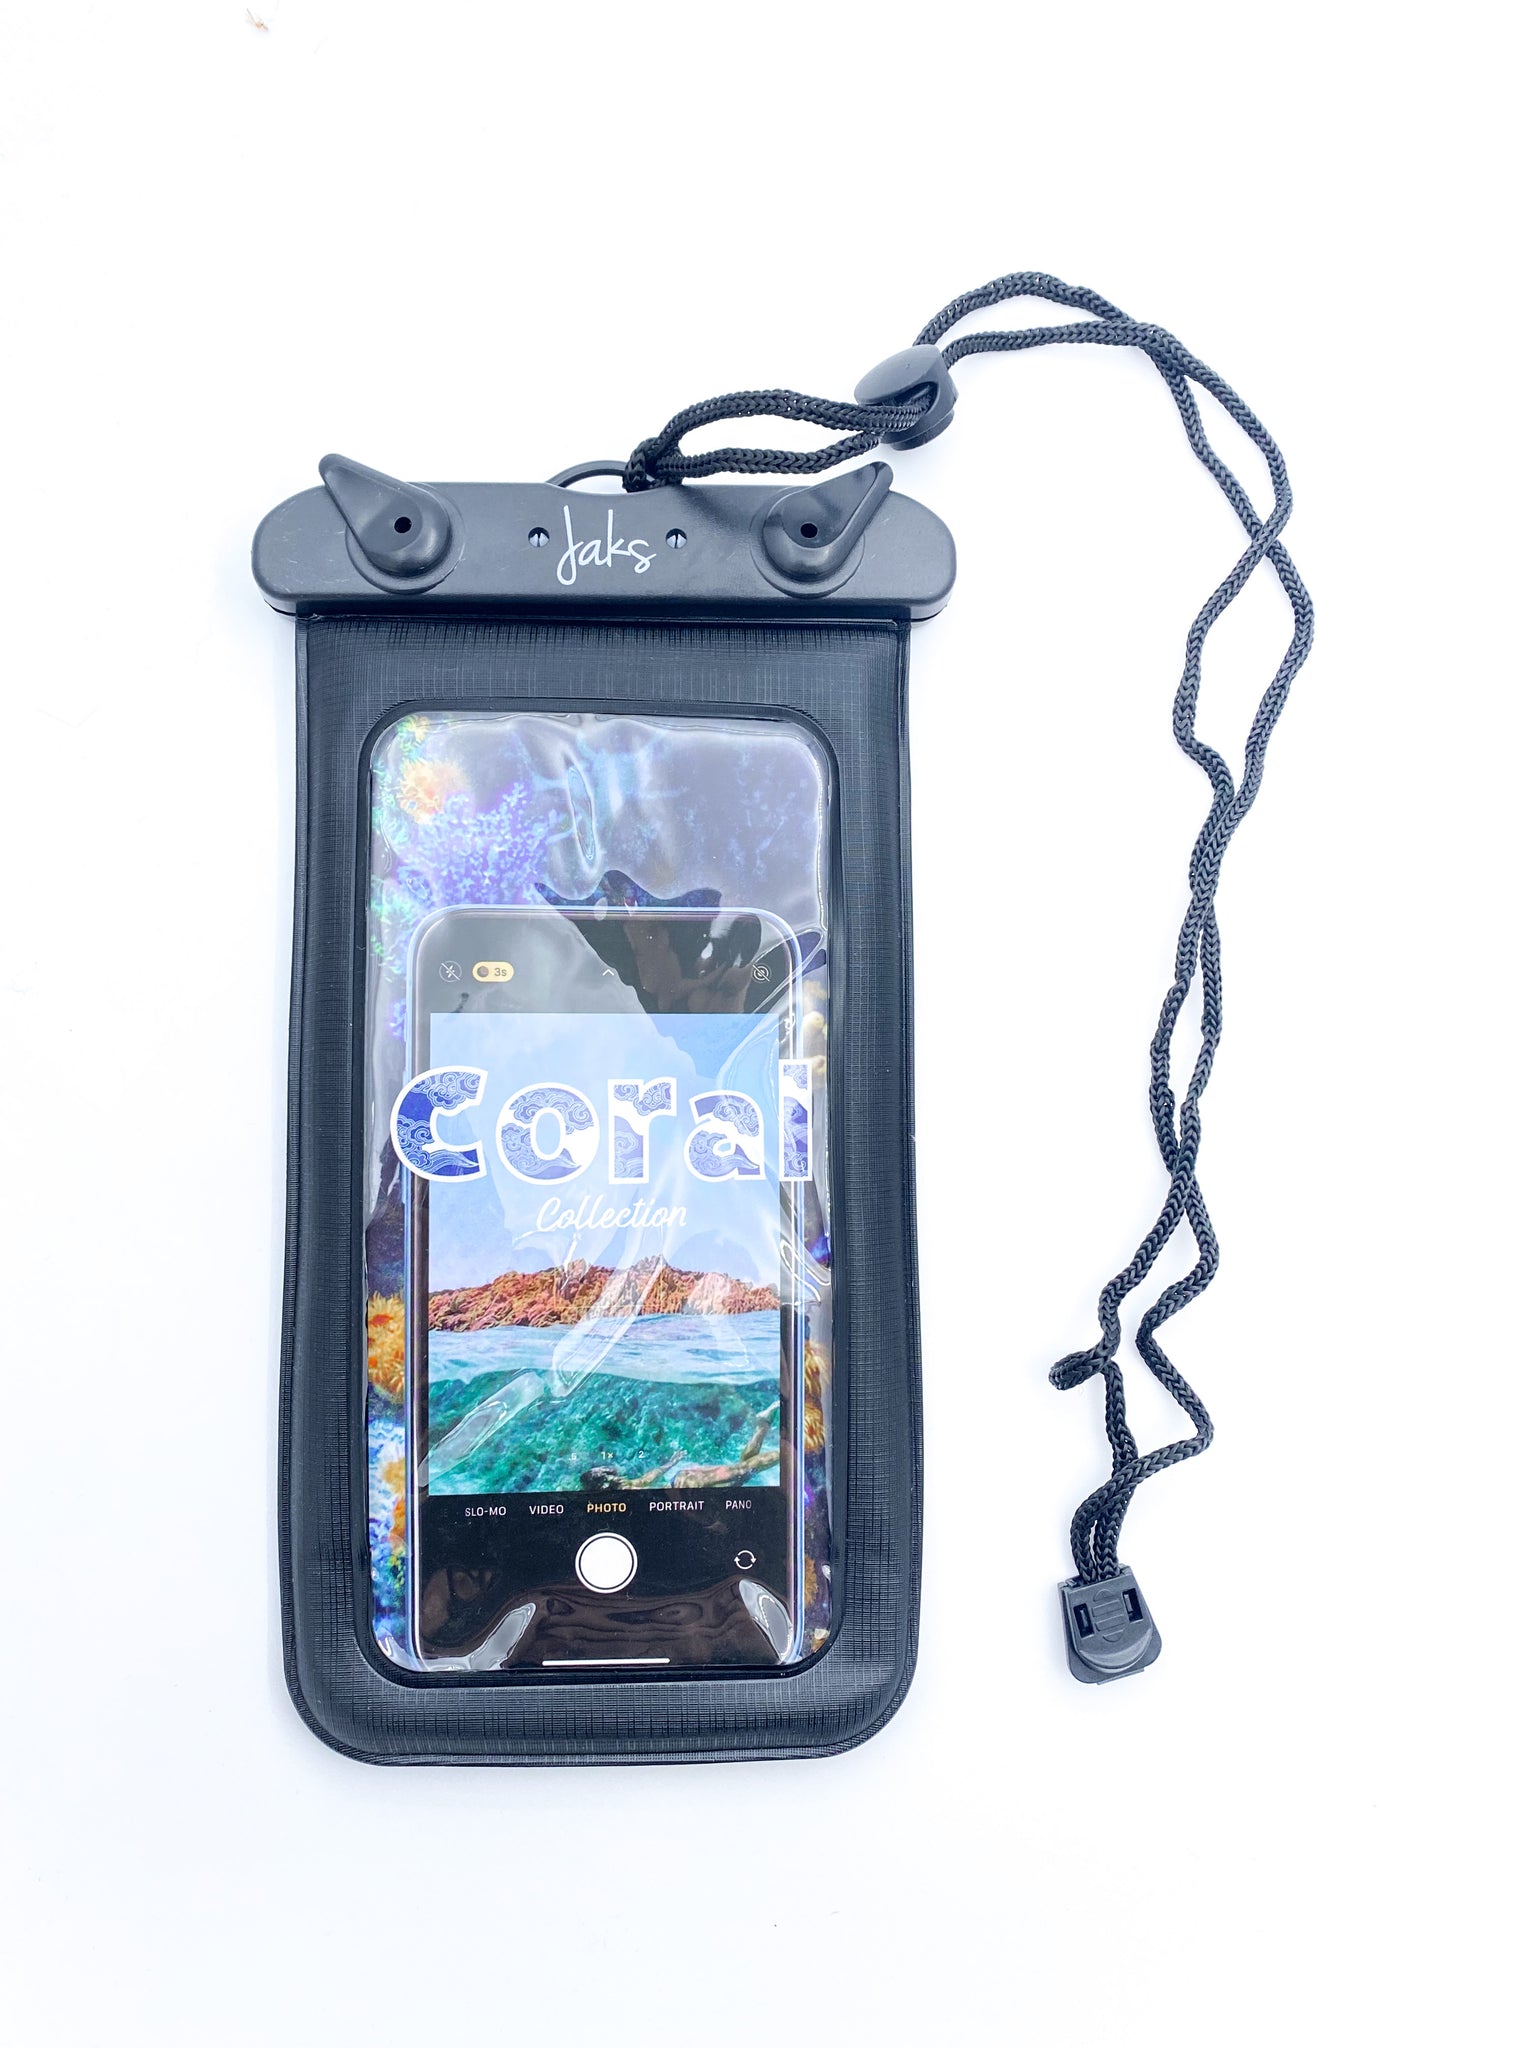 Jaks “Coral Reef” Floating Waterproof Phone Case